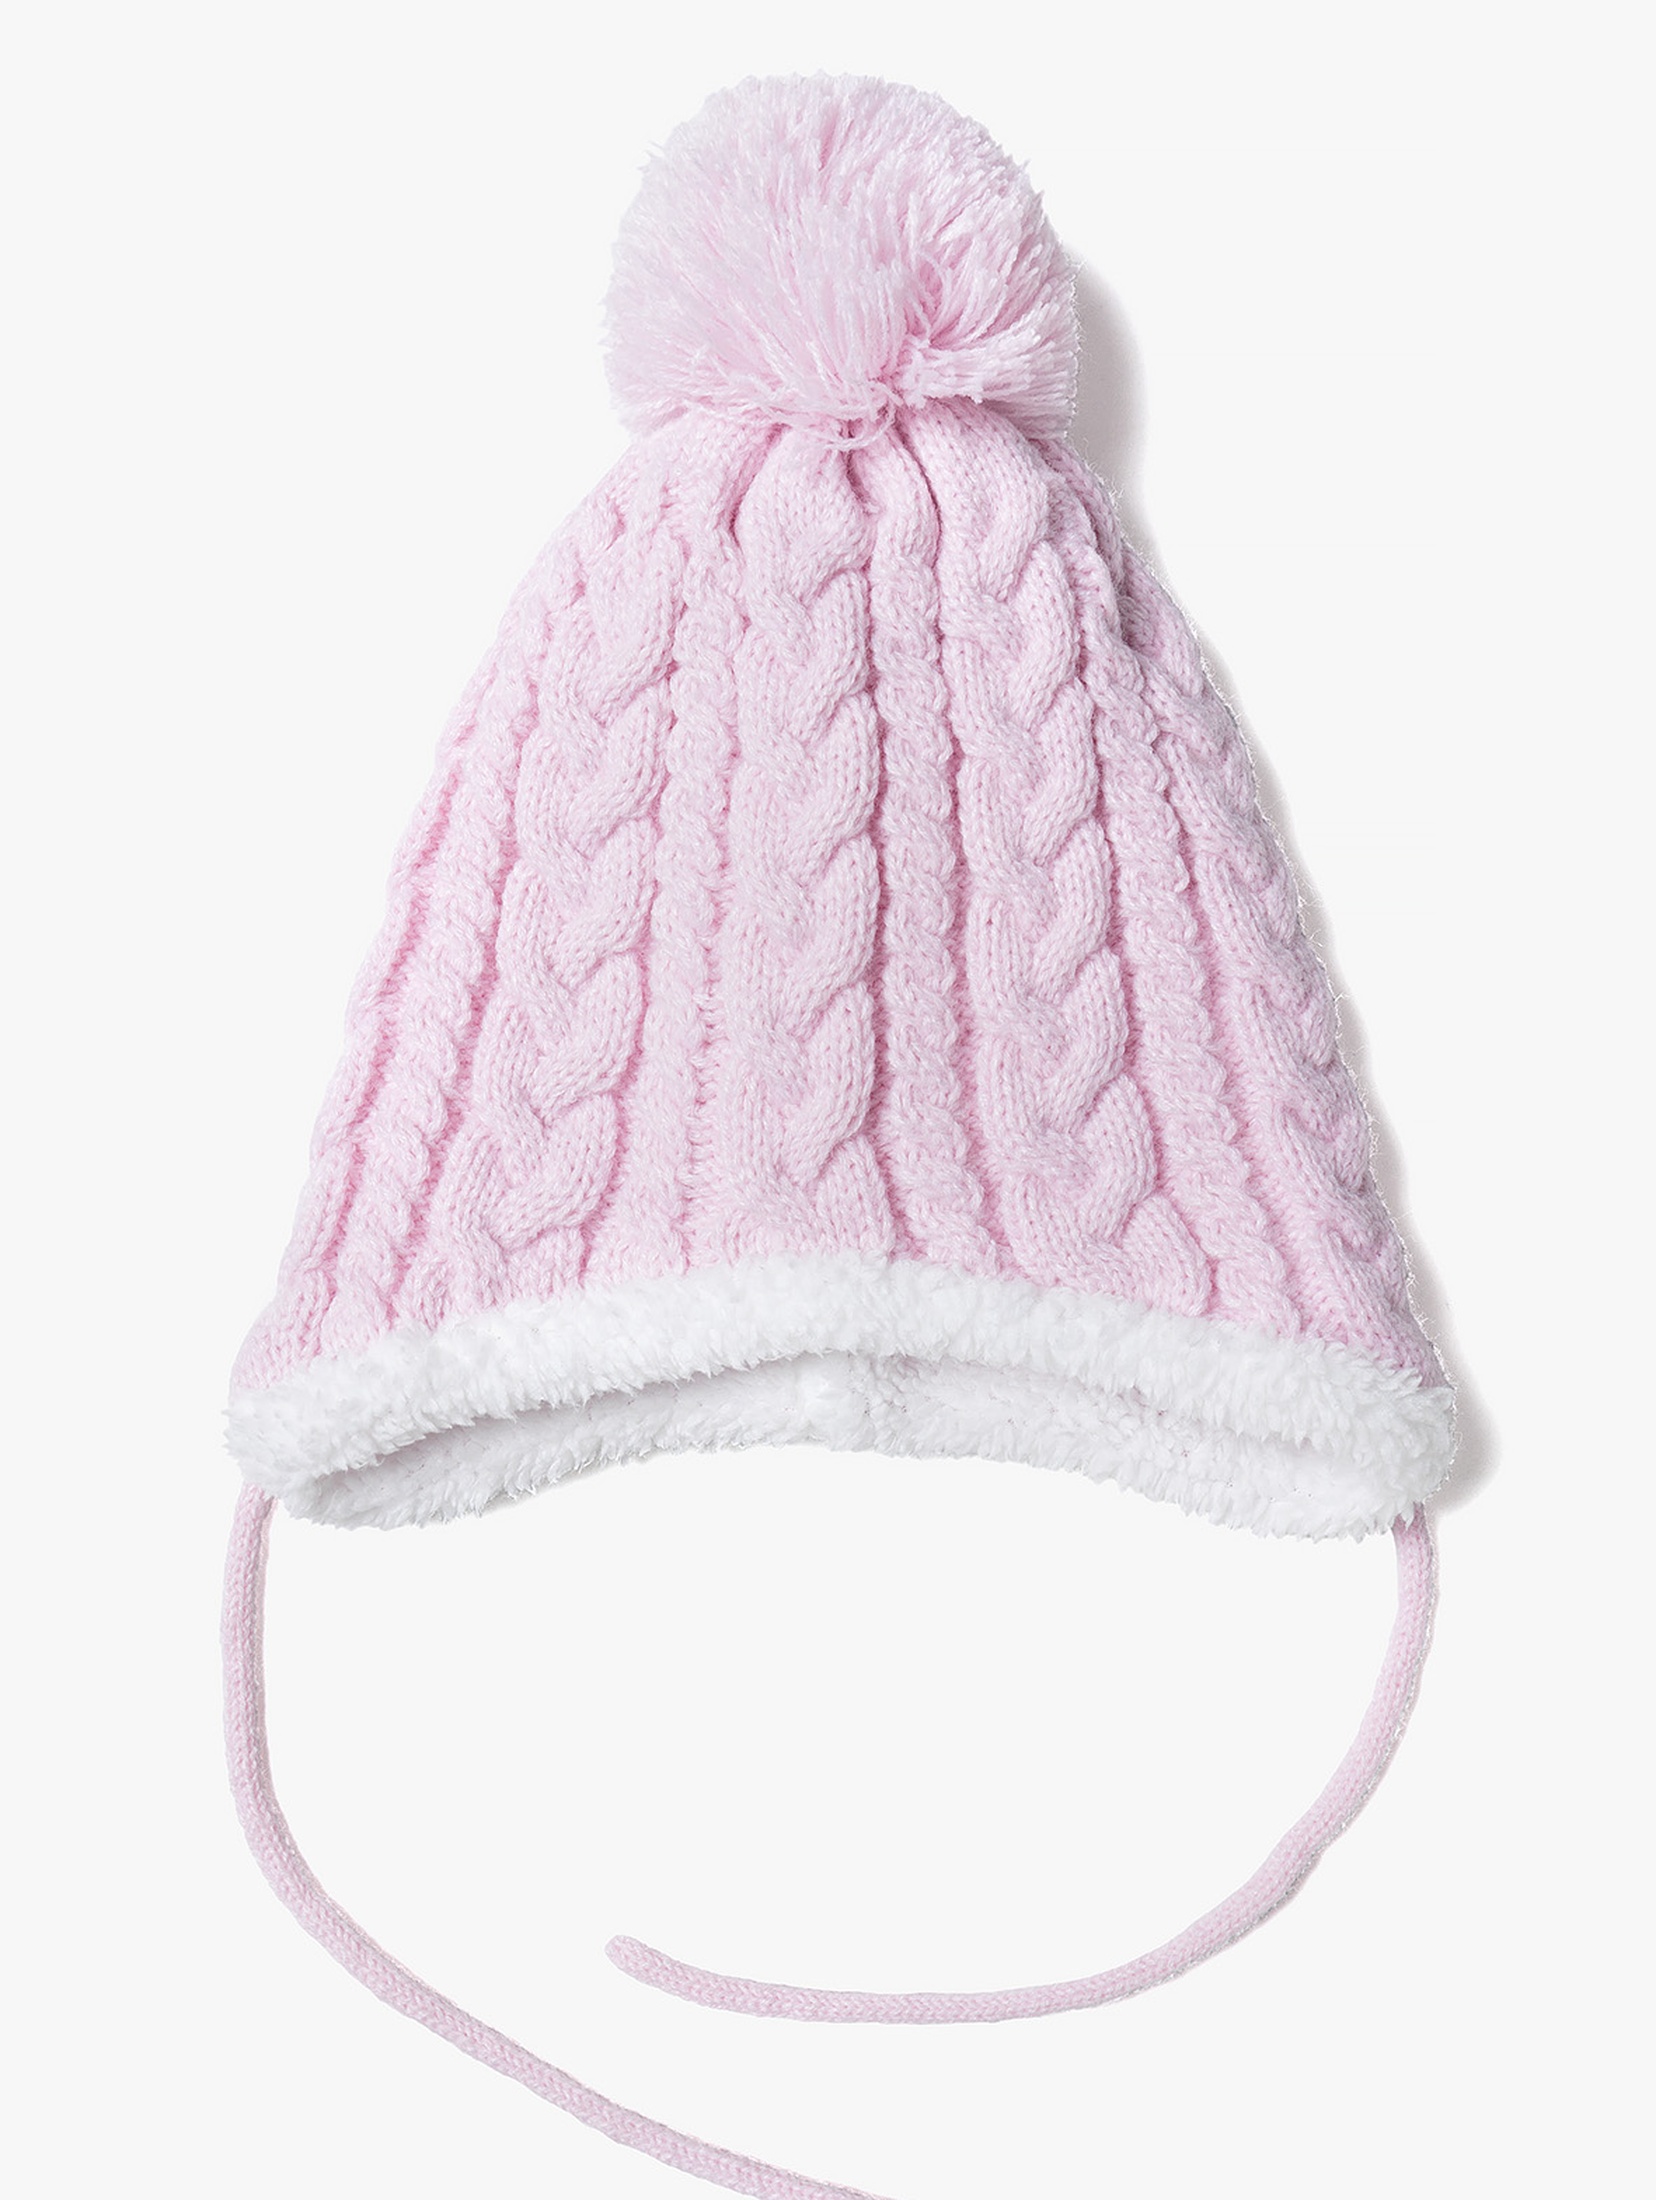 Ciepła zimowa czapka dla niemowlaka wiązana pod szyją - różowa